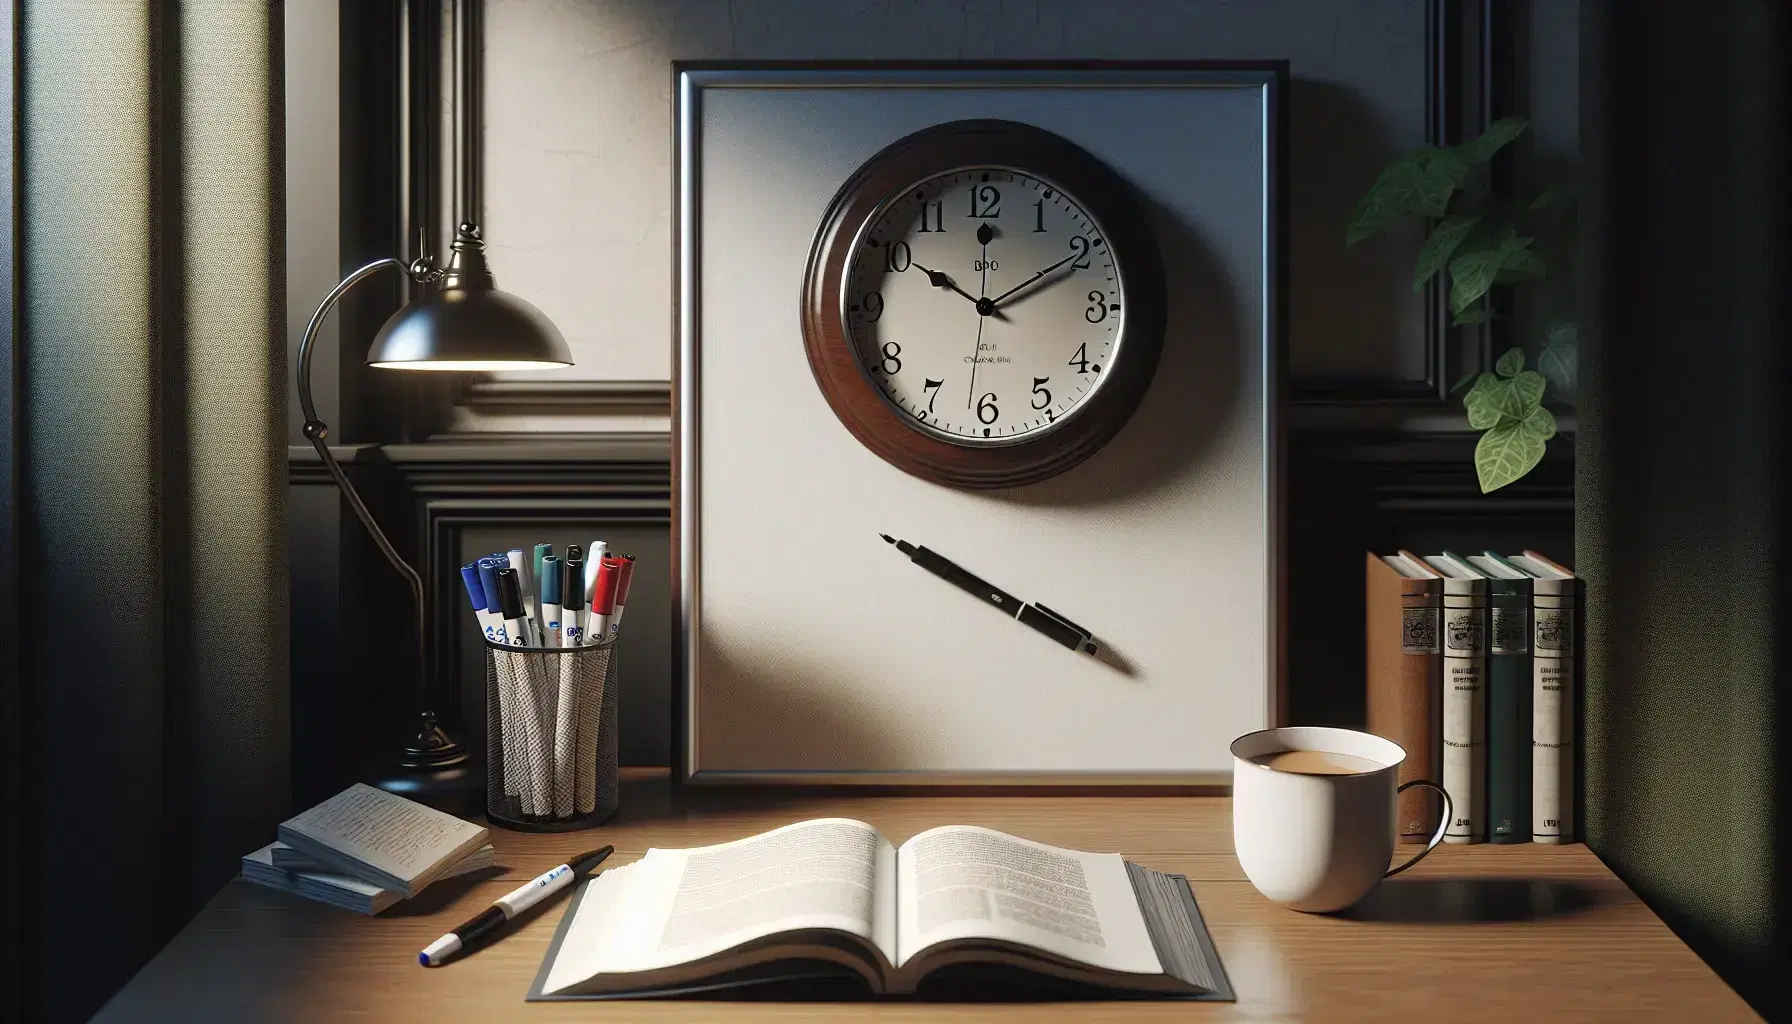 Reloj de pared clásico con marco de madera oscura y manecillas negras marcando las 10:10, junto a pizarra con rotuladores y mesa con libro abierto, taza con bebida y cuchara.